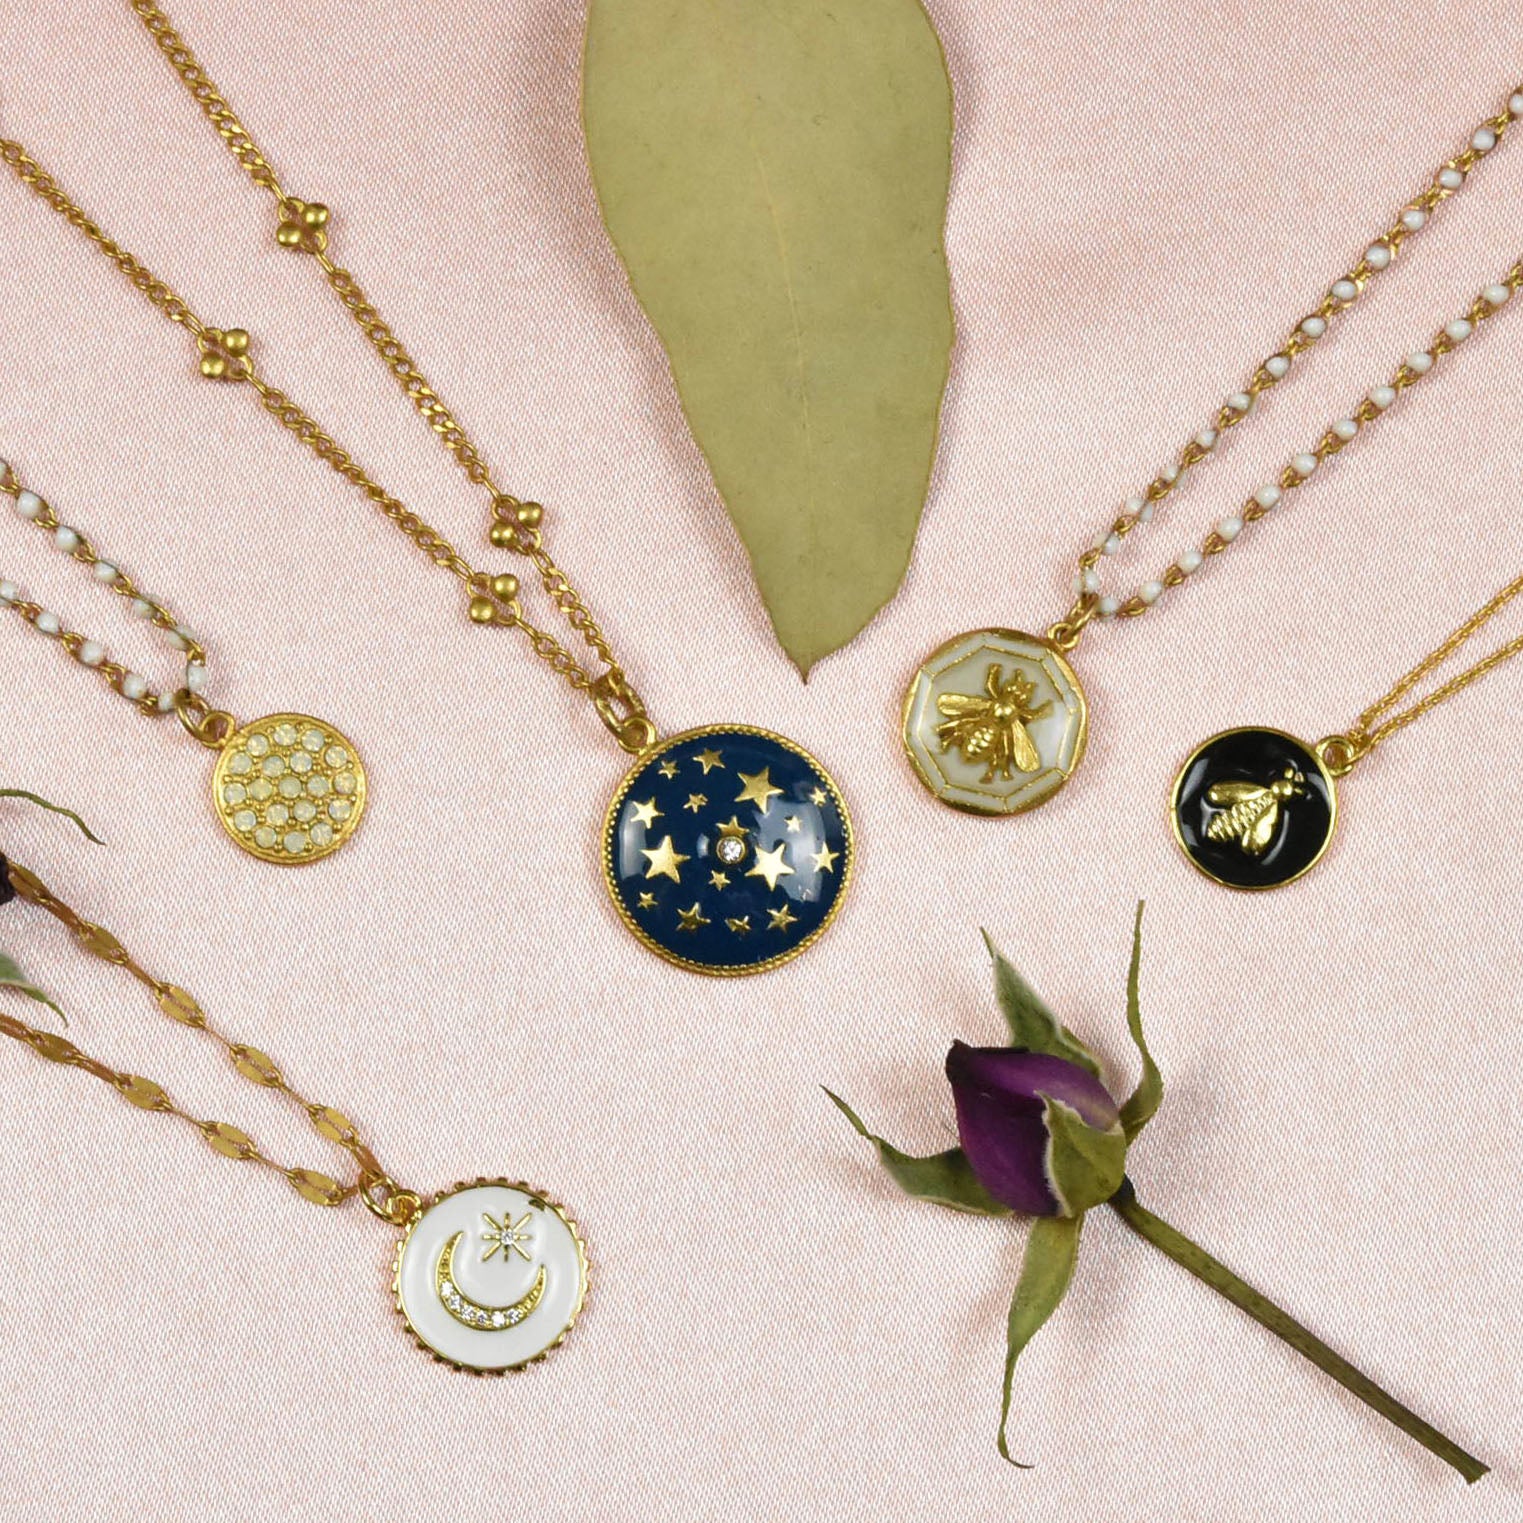 Necklaces by La Vie Parisienne jewelry